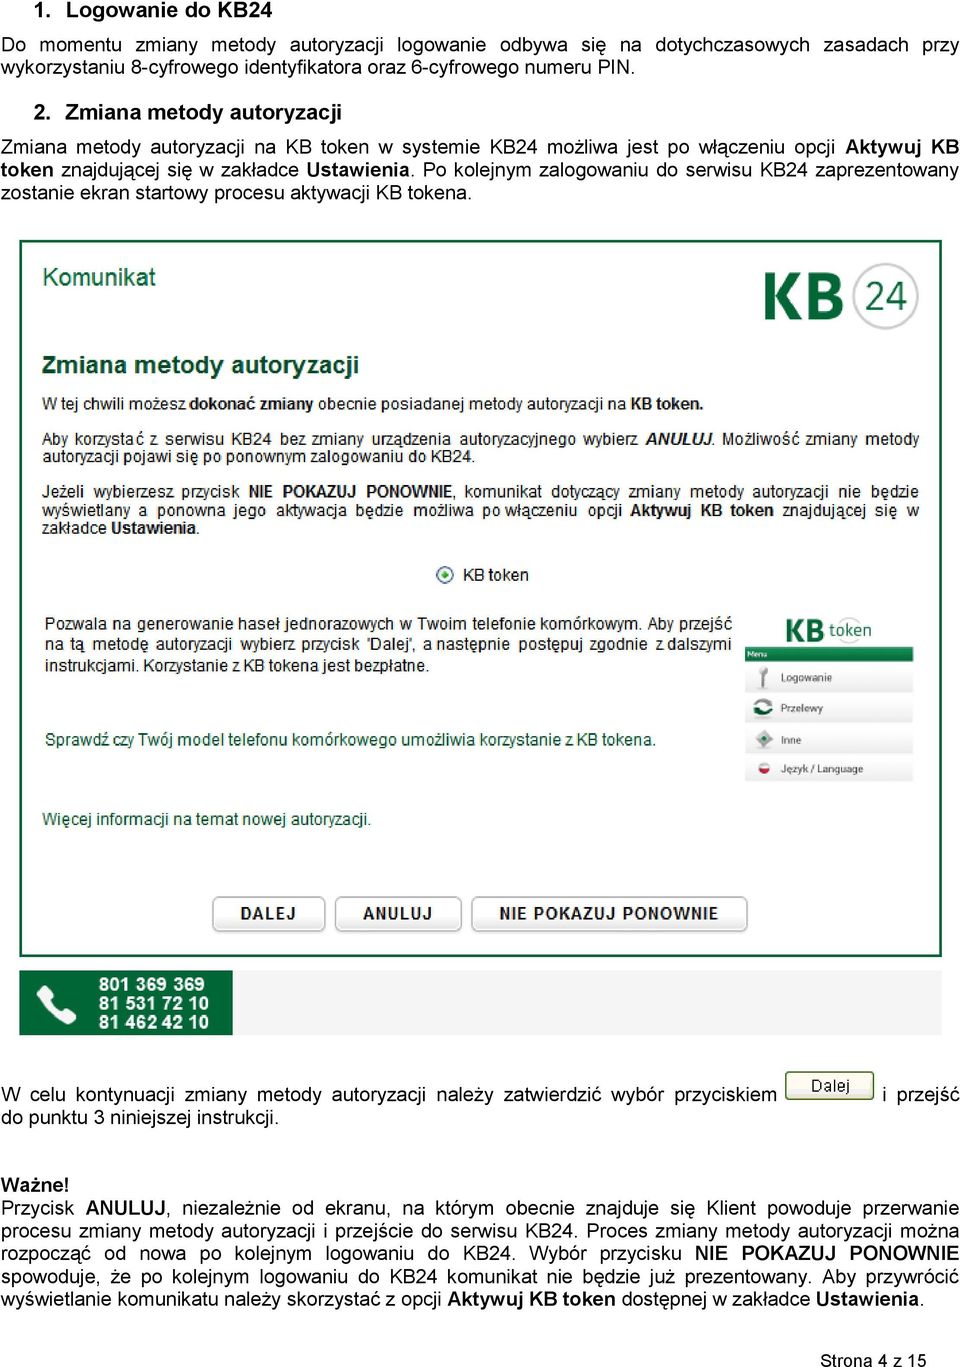 Po kolejnym zalogowaniu do serwisu KB24 zaprezentowany zostanie ekran startowy procesu aktywacji KB tokena.